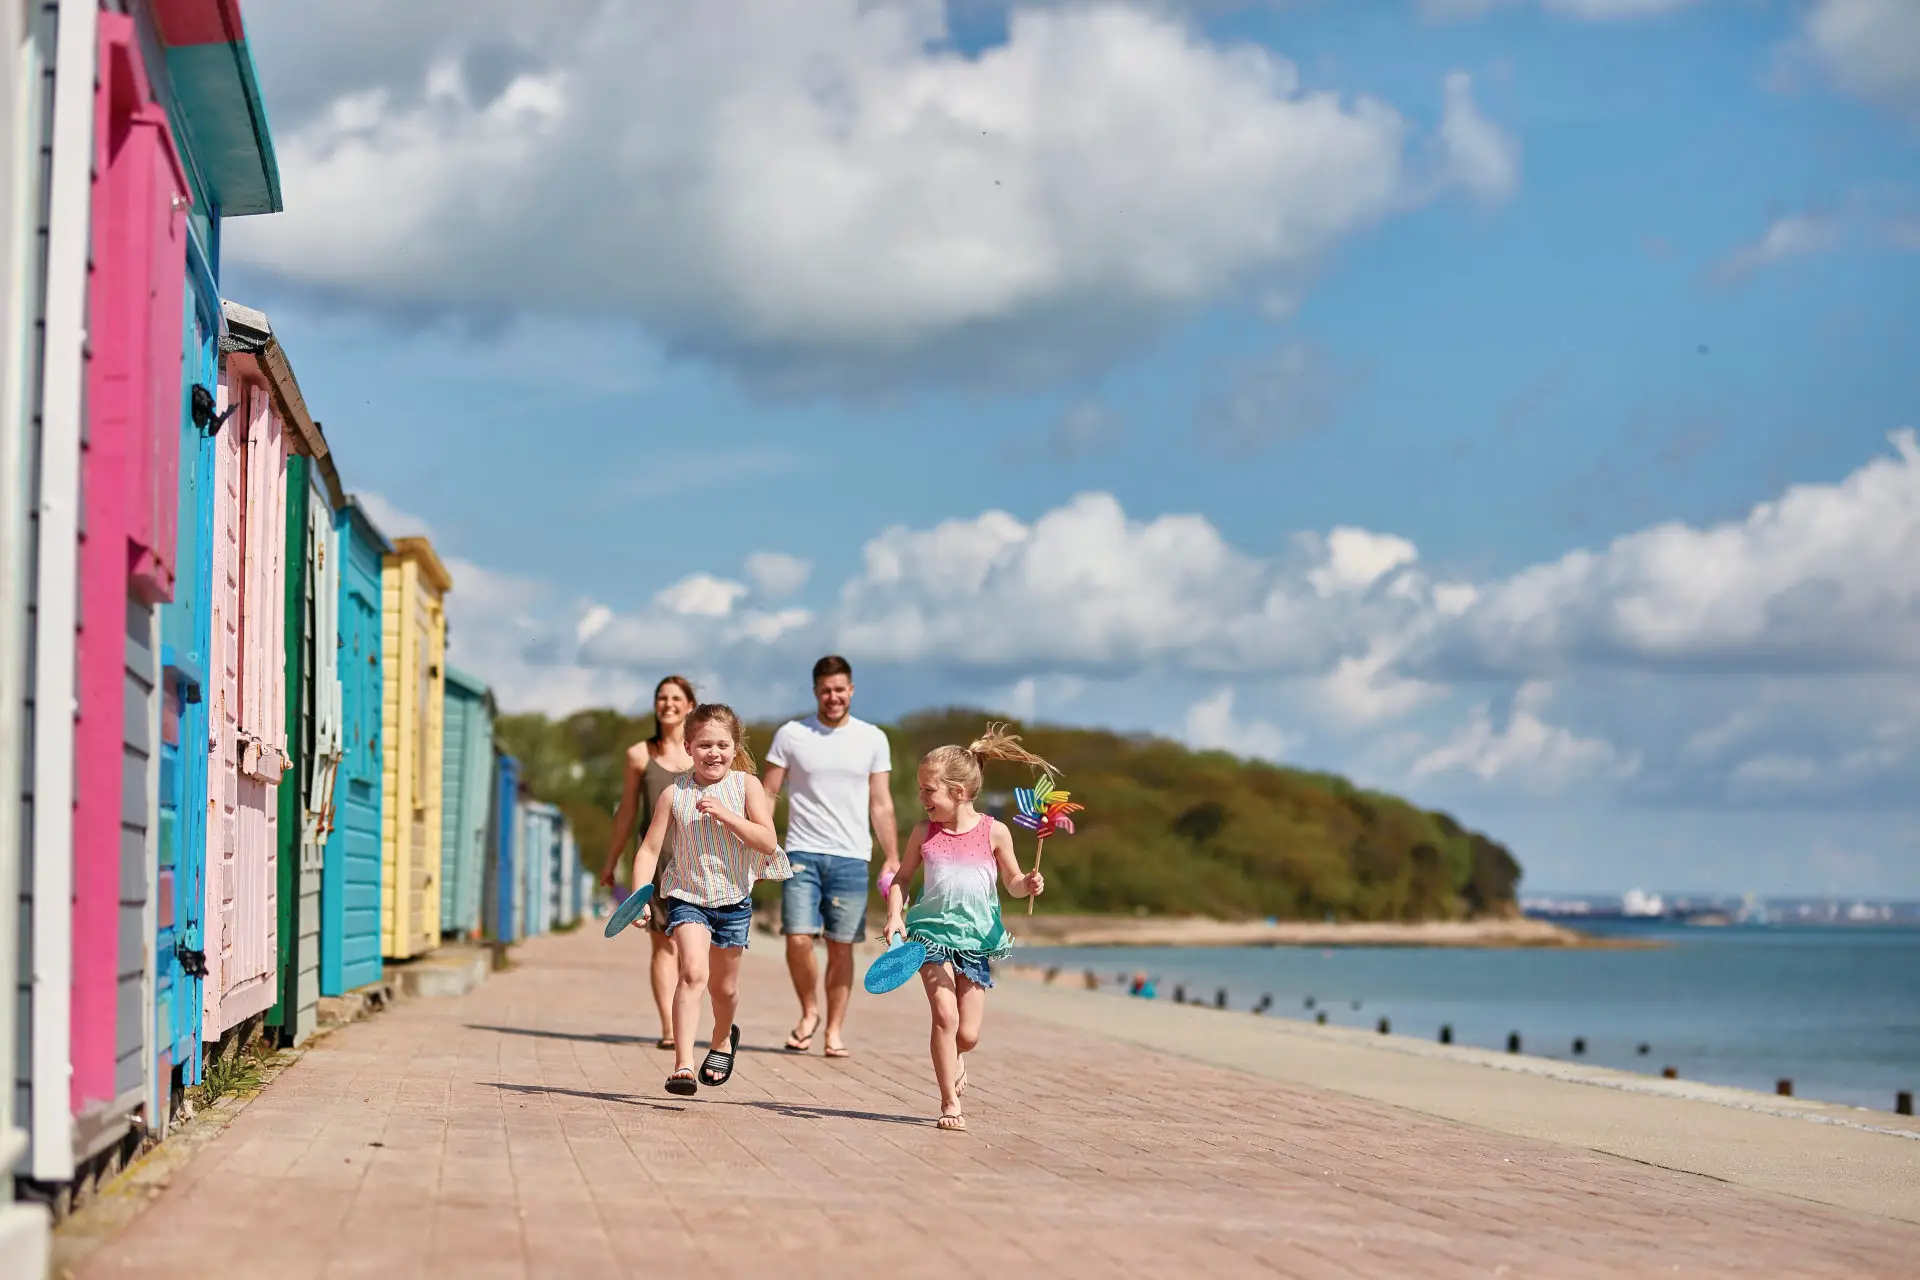 Children running along Nodes Point Beach past colourful beach huts